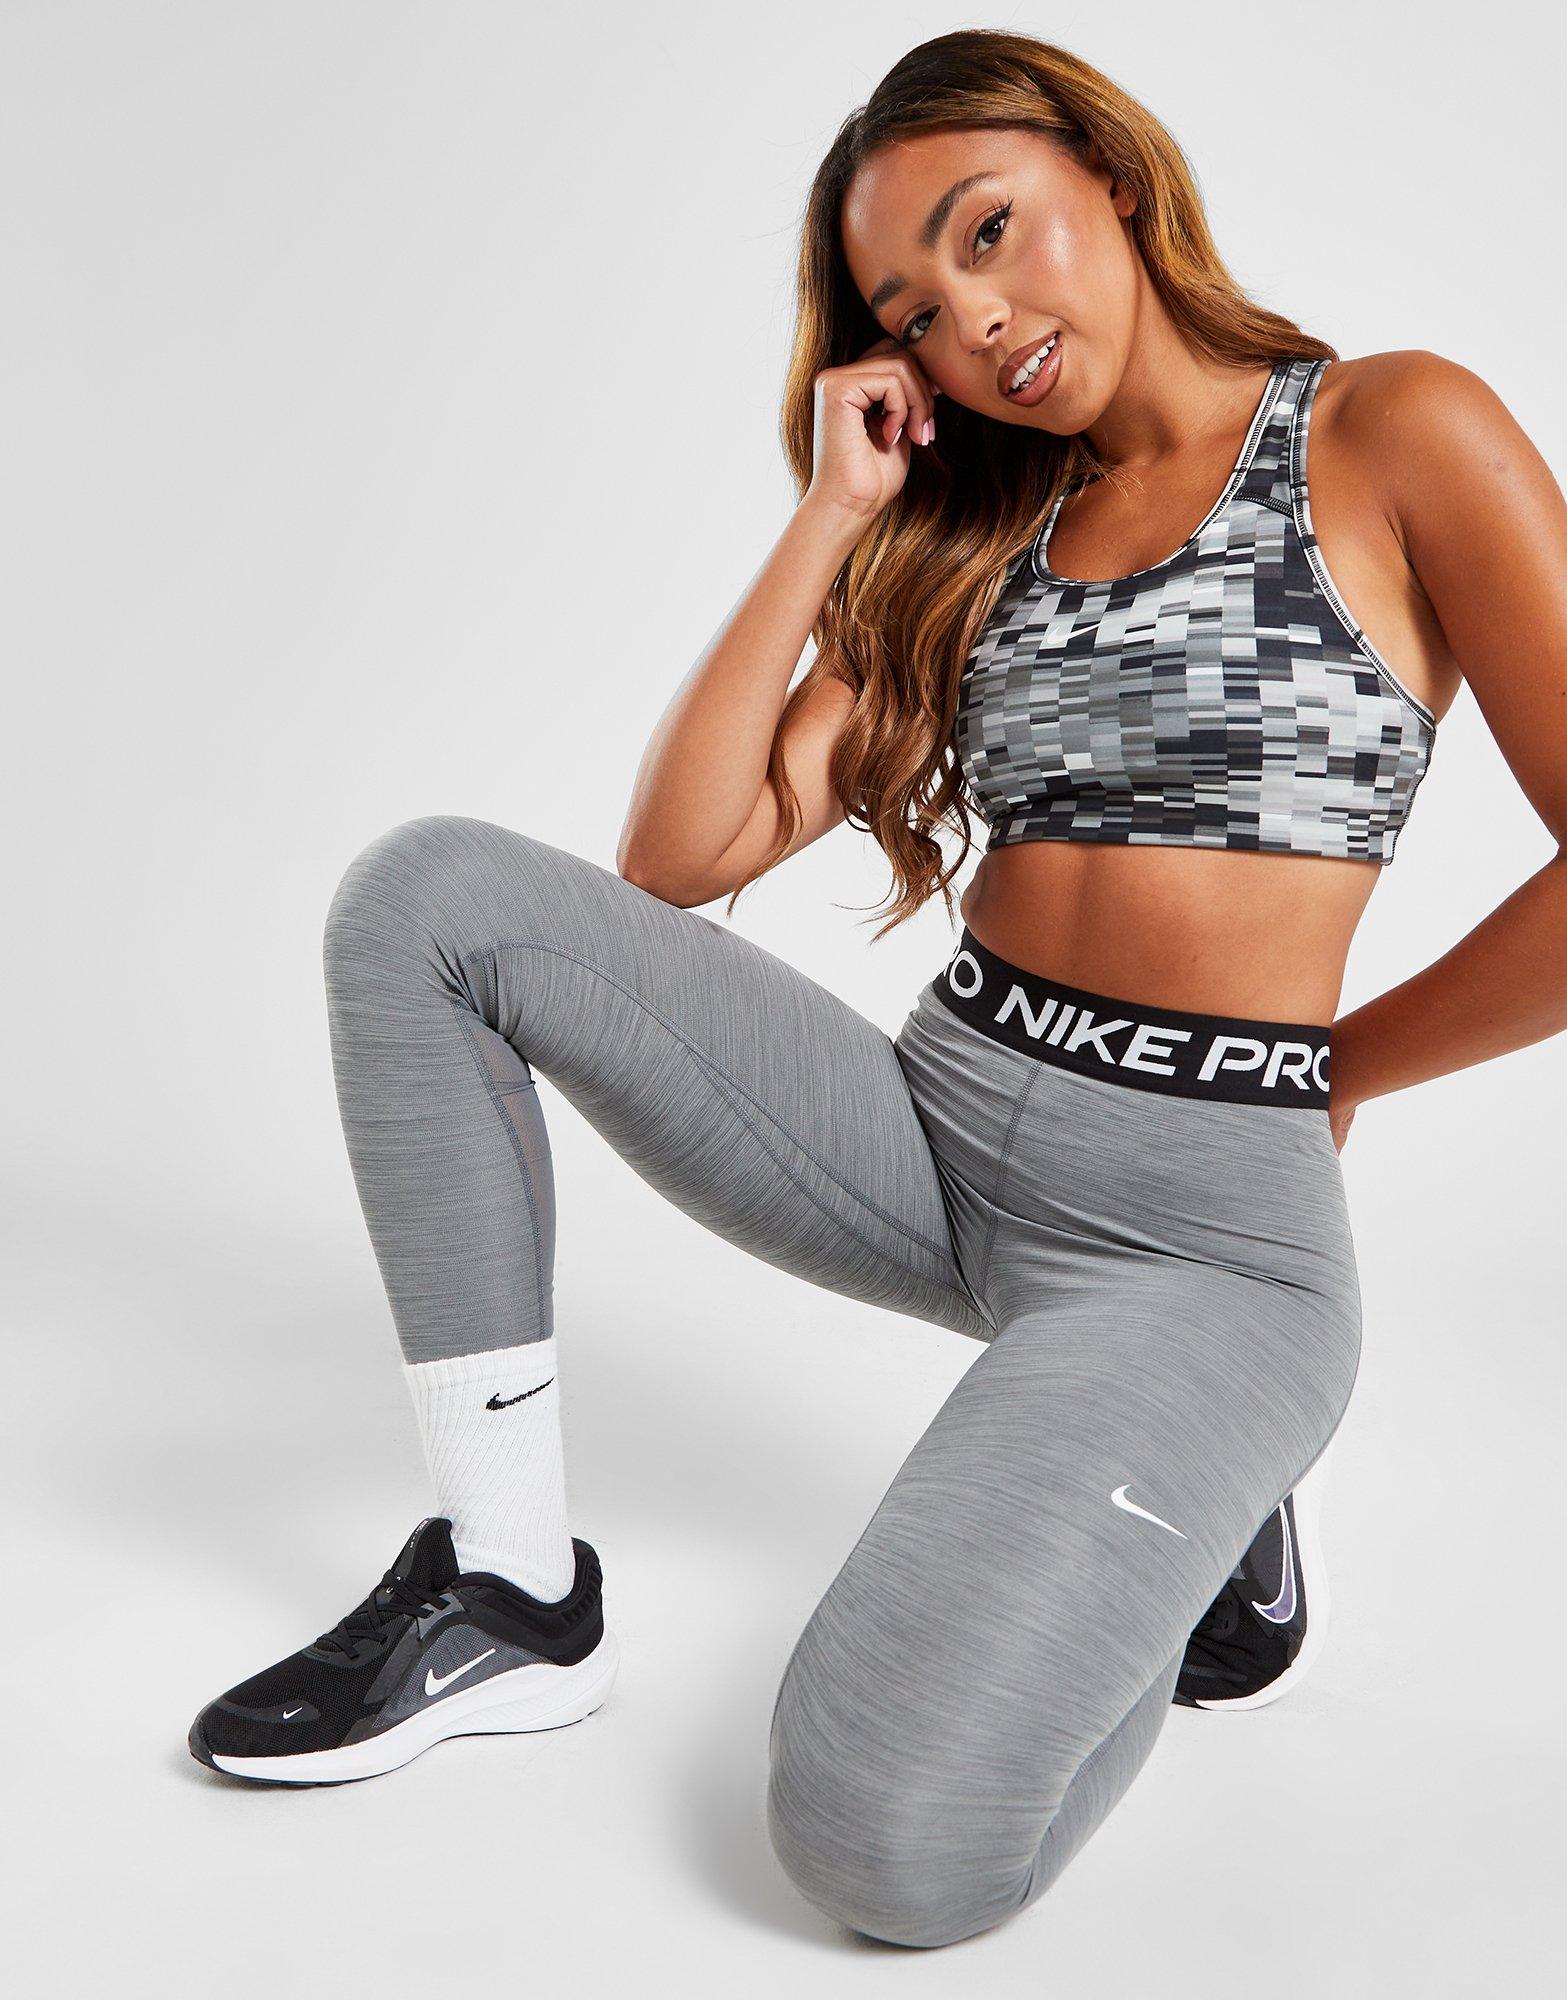 Nike Zenvy Women's Gentle-Support Mid-Rise Full-Length Leggings